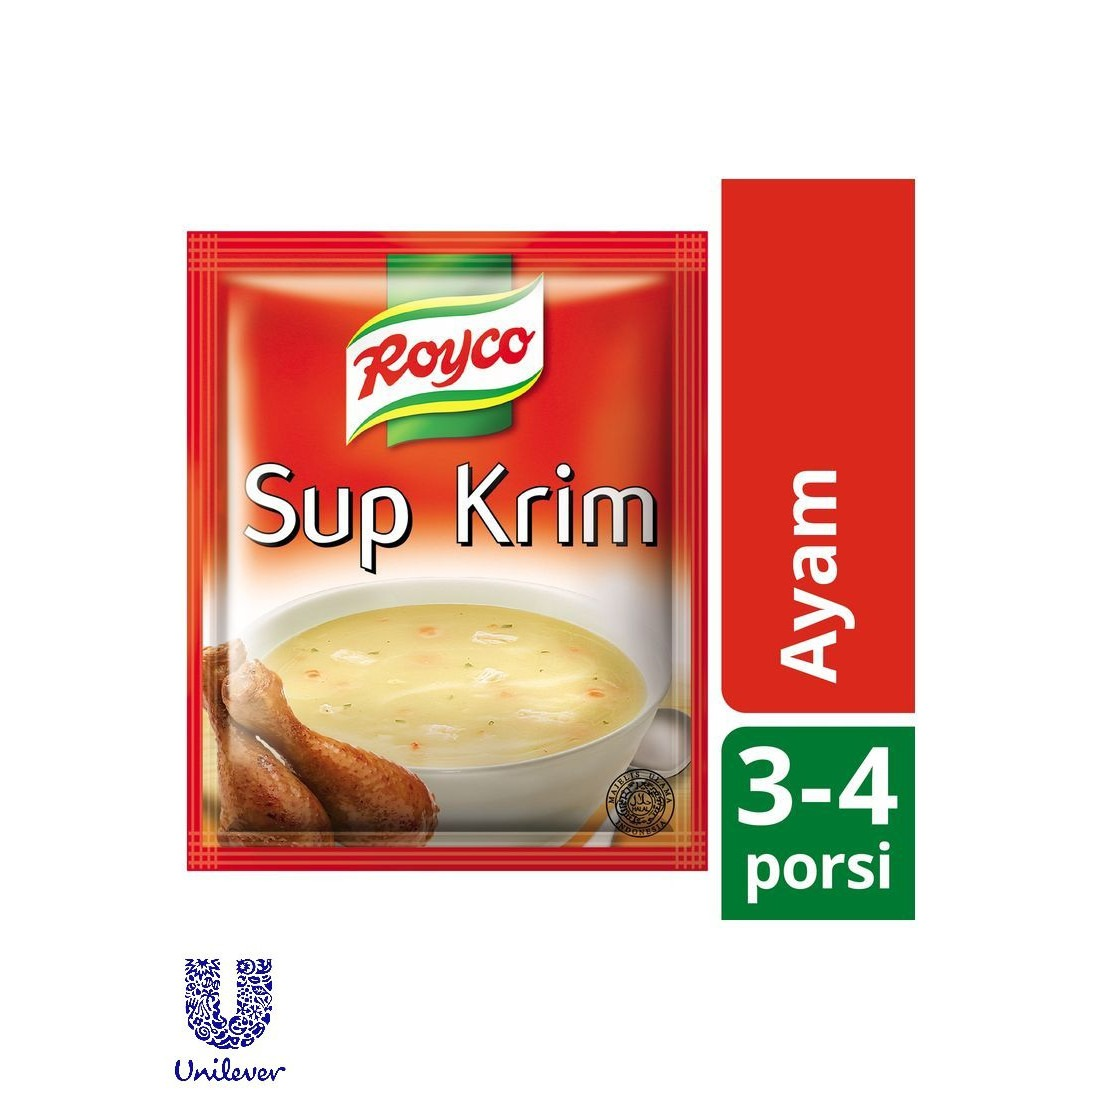 Royco 58G Sup Krim Ayam